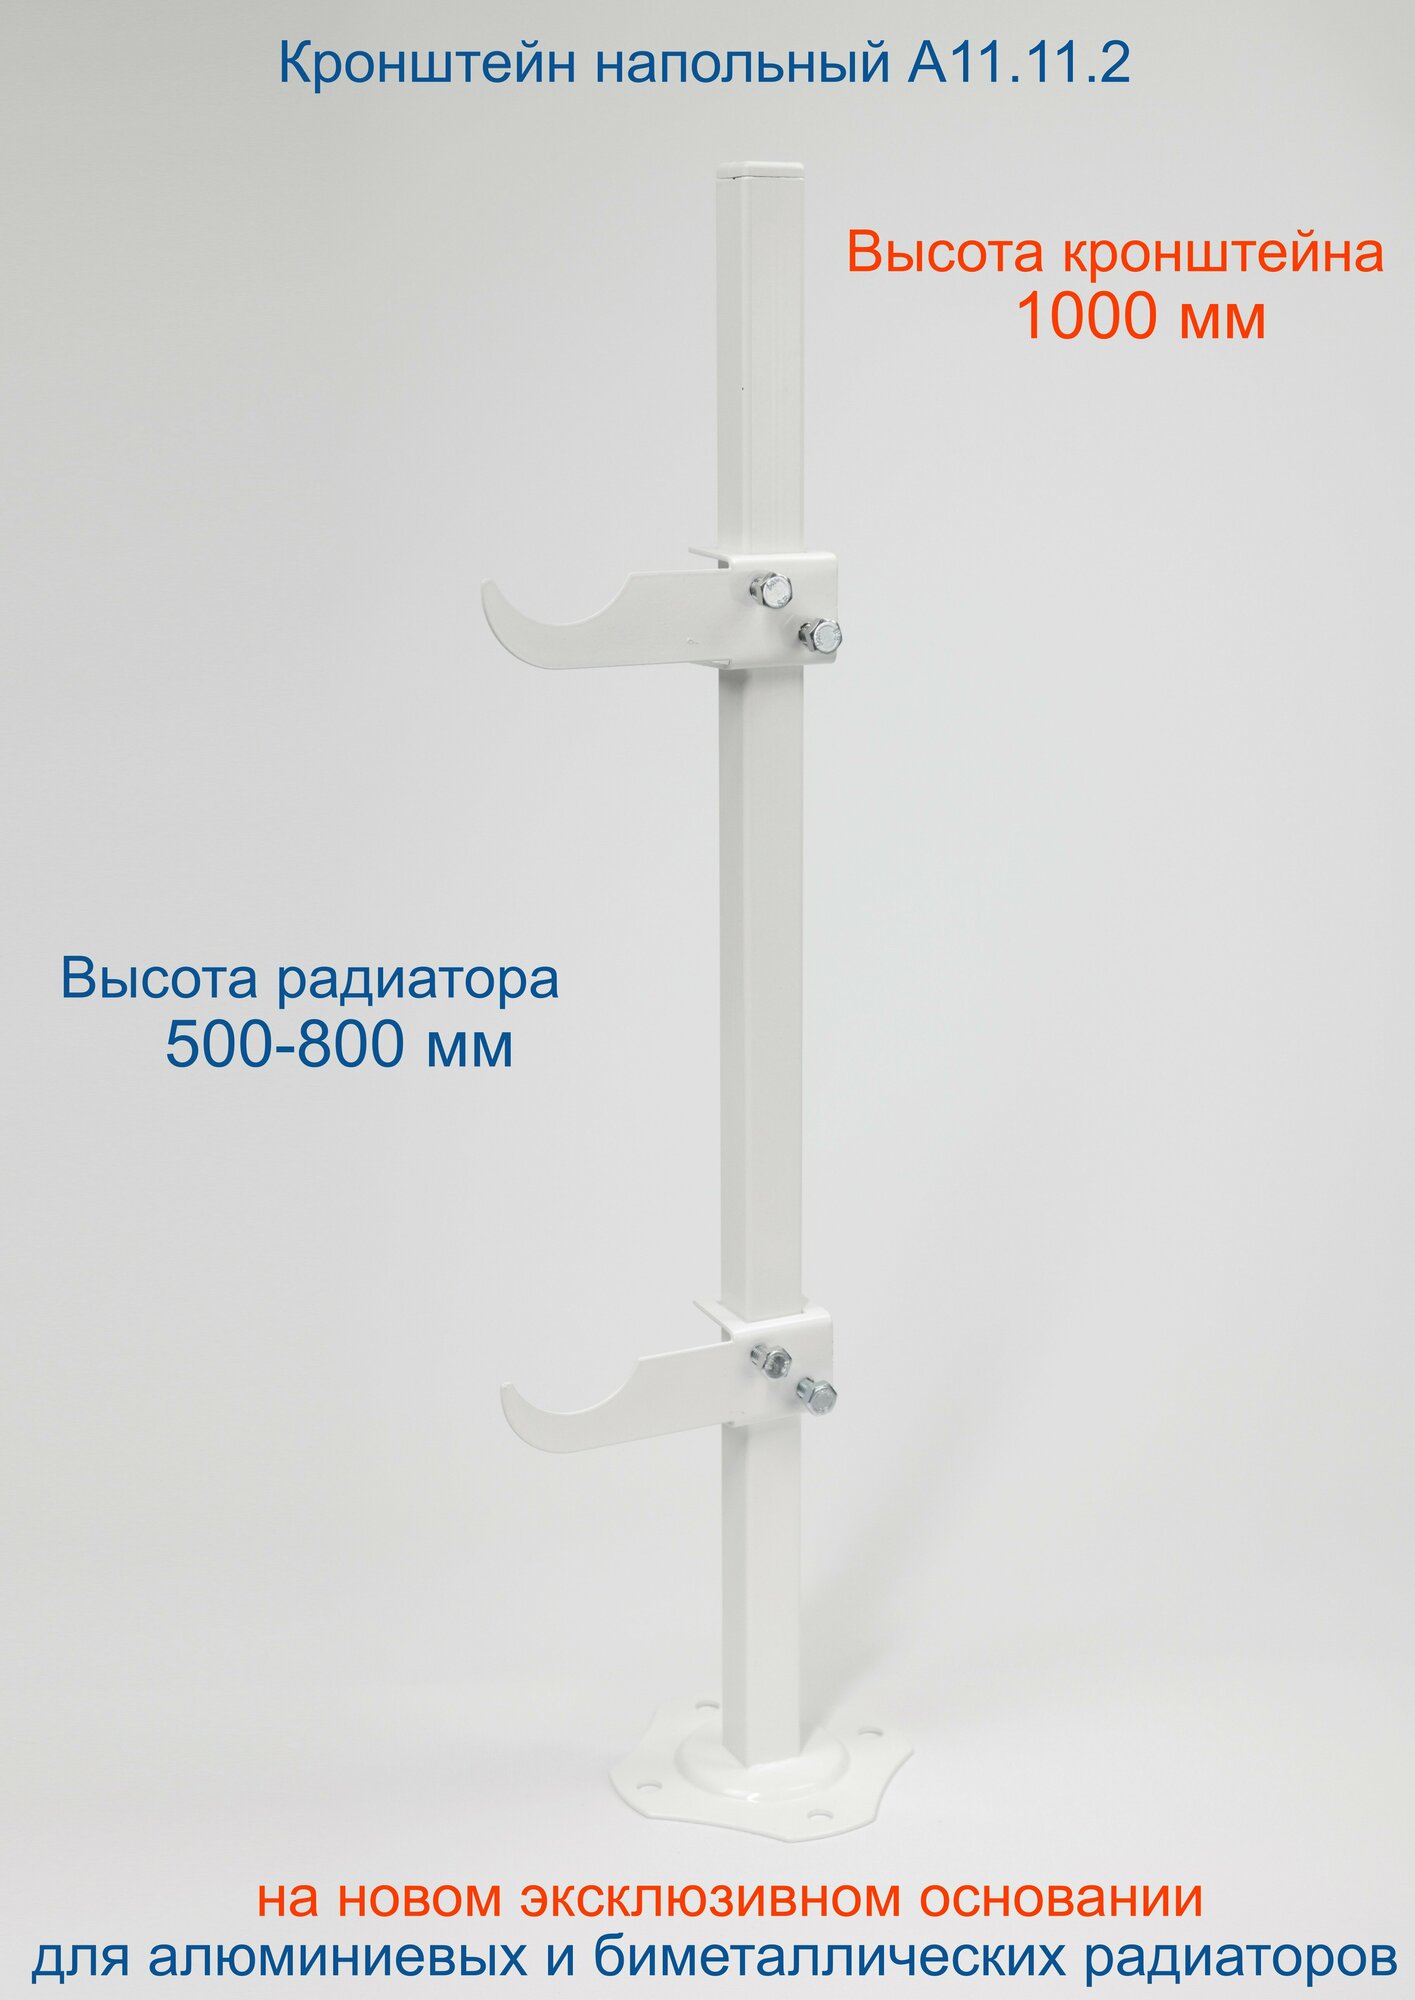 Кронштейн напольный регулируемый Кайрос А11.11.2 для алюминиевых и биметаллических радиаторов высотой 570-800 мм (высота стойки 1000 мм)